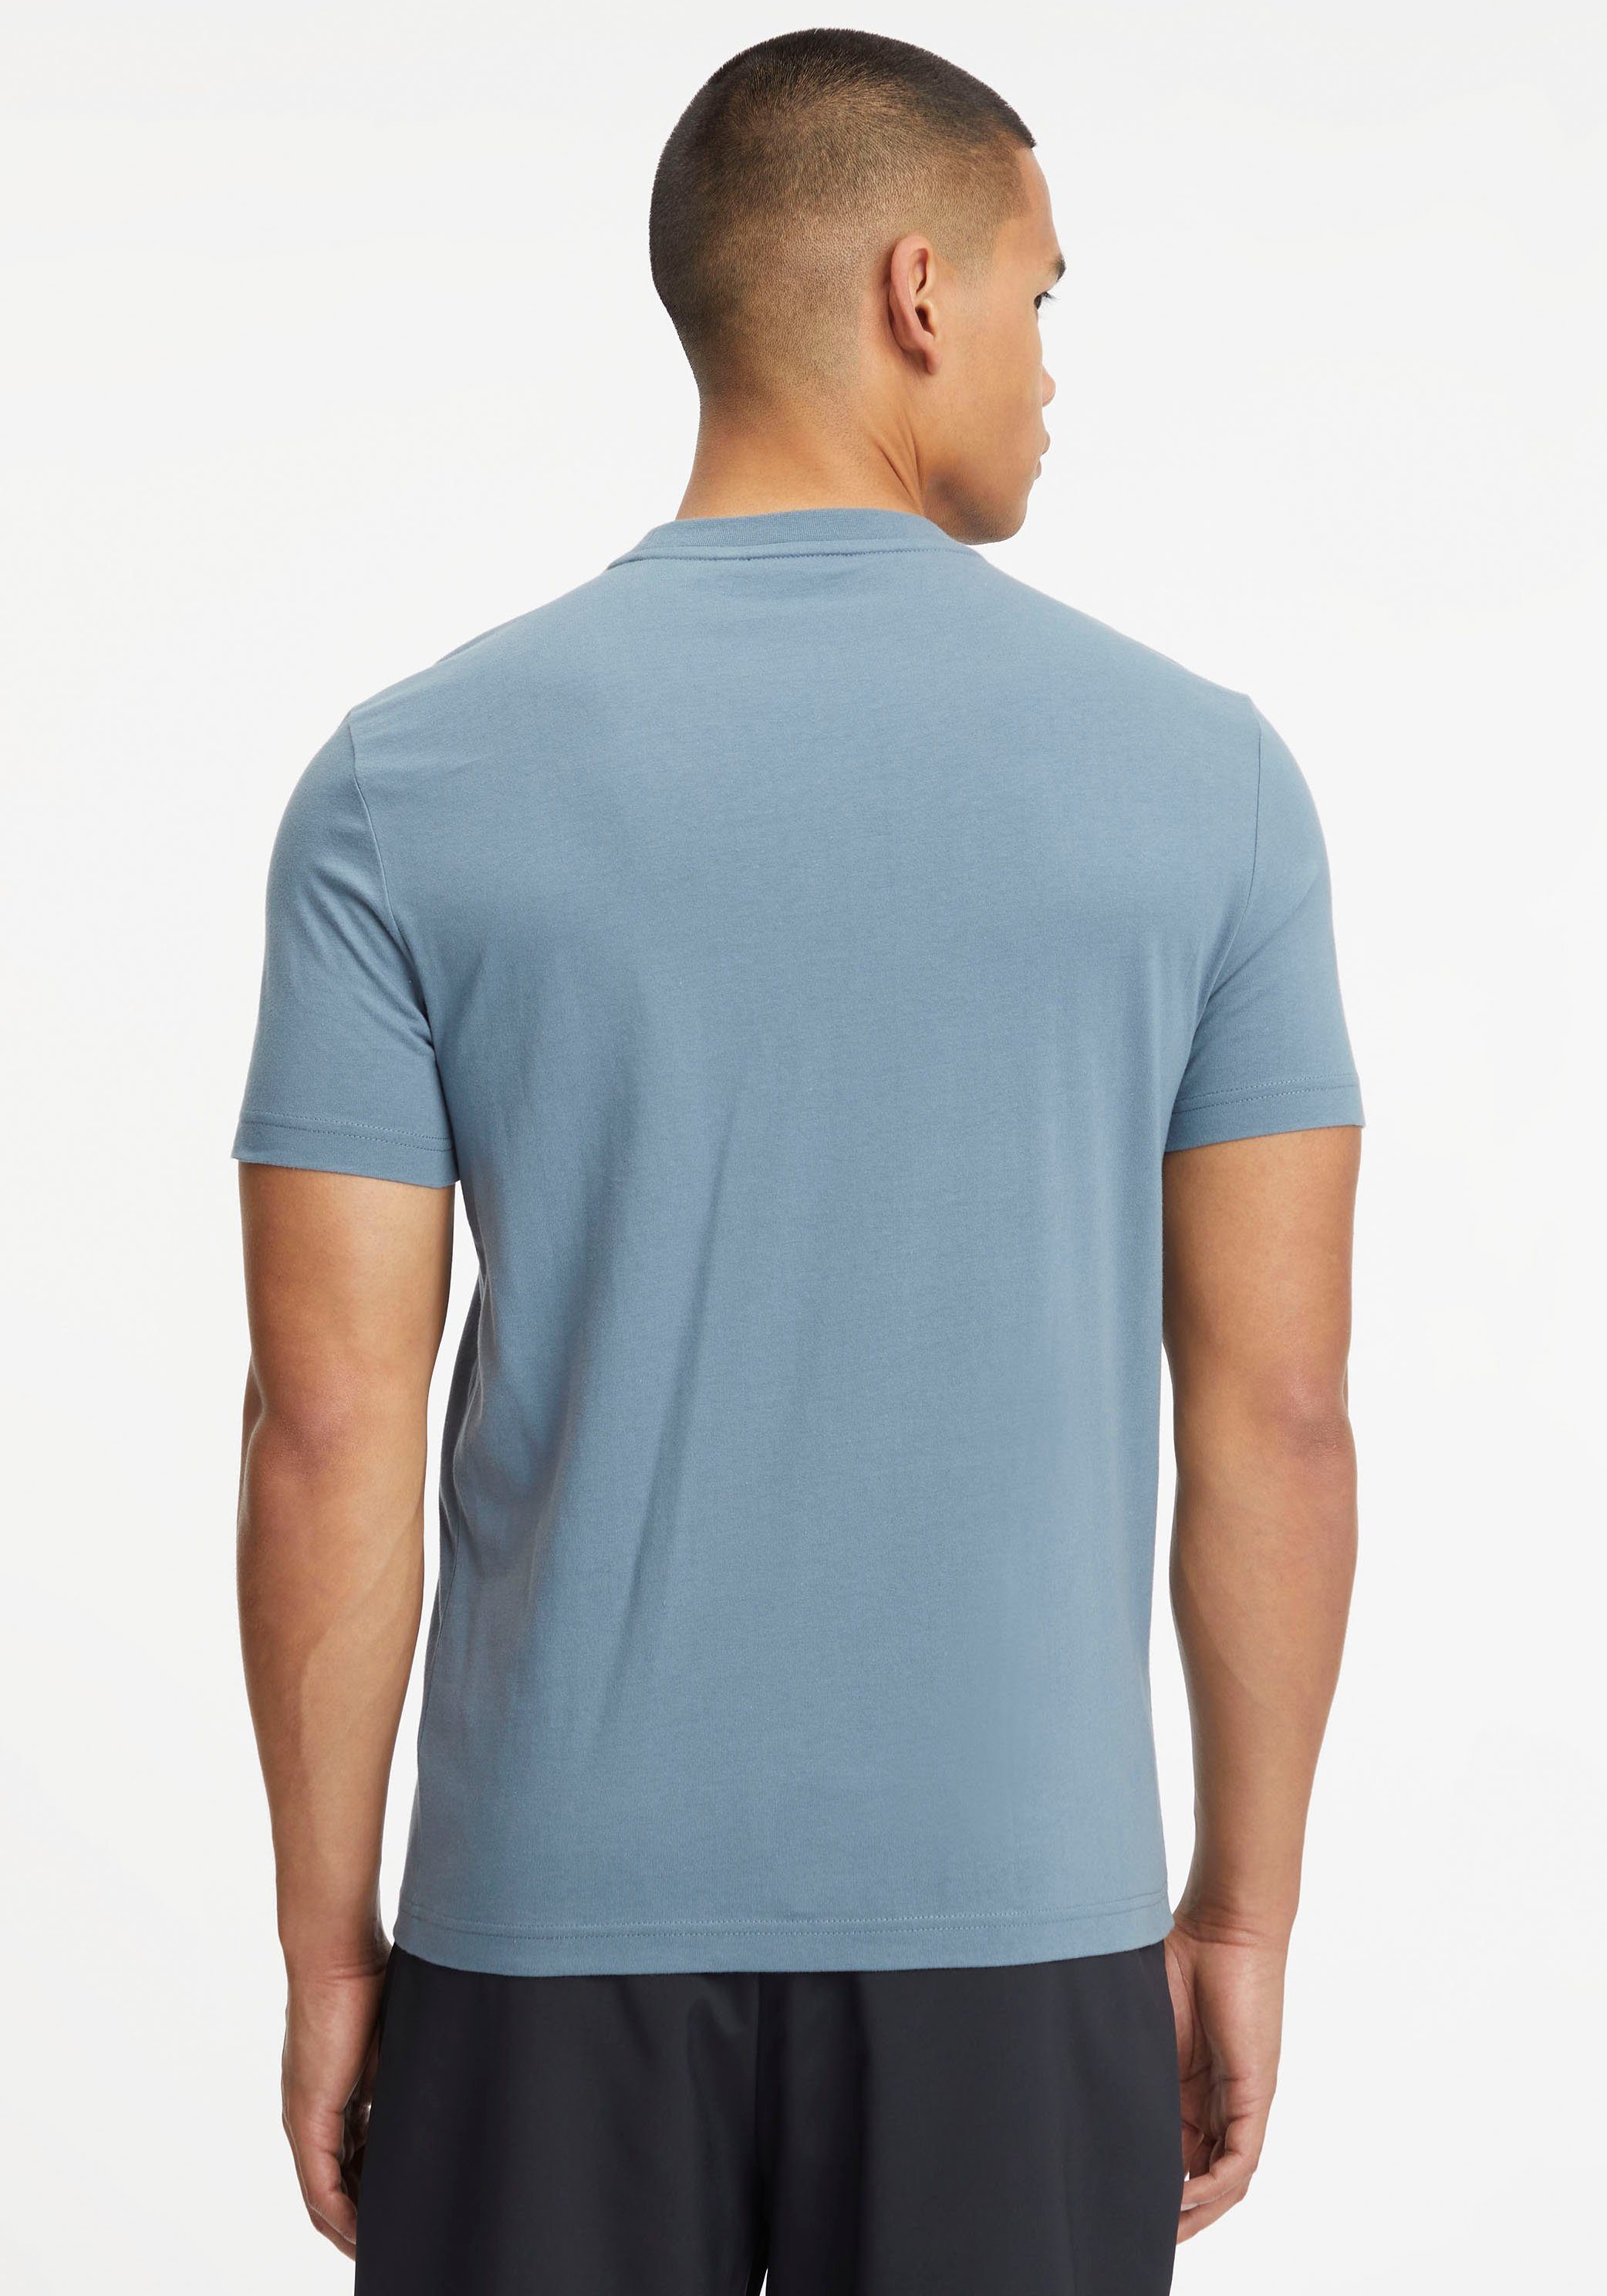 Calvin Klein T-Shirt Baumwolle LOGO Grey Tar aus BOX STRIPED reiner T-SHIRT